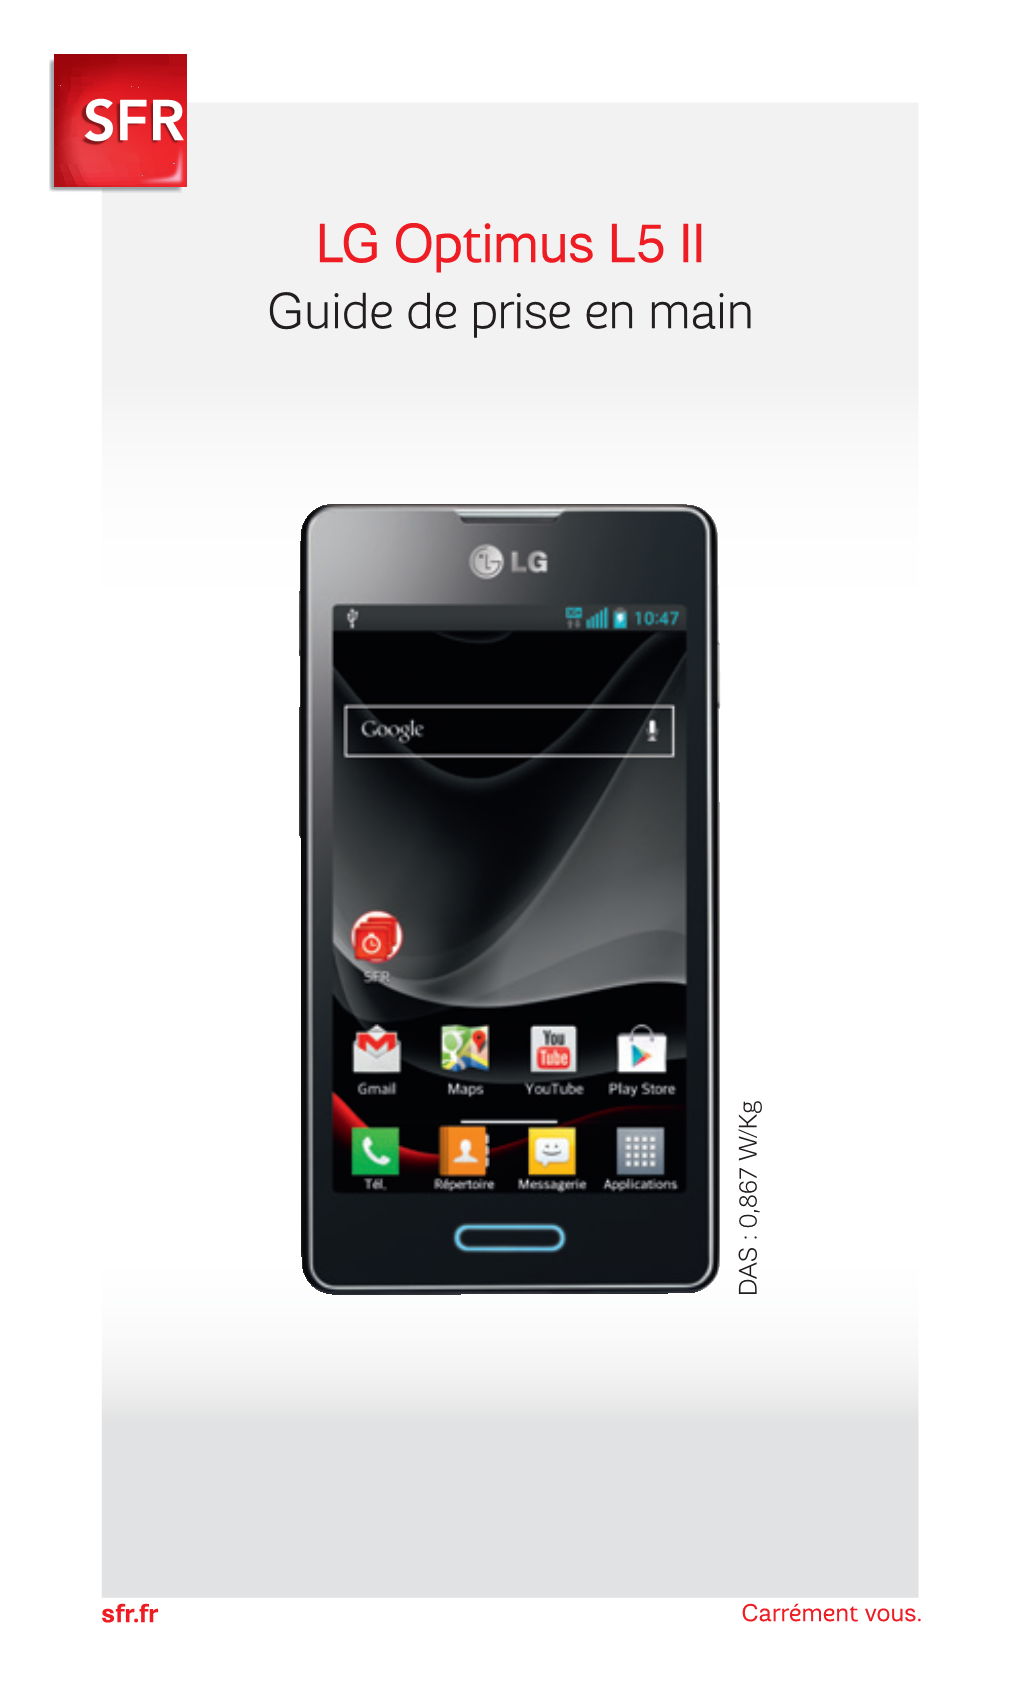 LG Optimus L5 II Guide De Prise En Main DAS : 0,867 W/Kg : 0,867 DAS